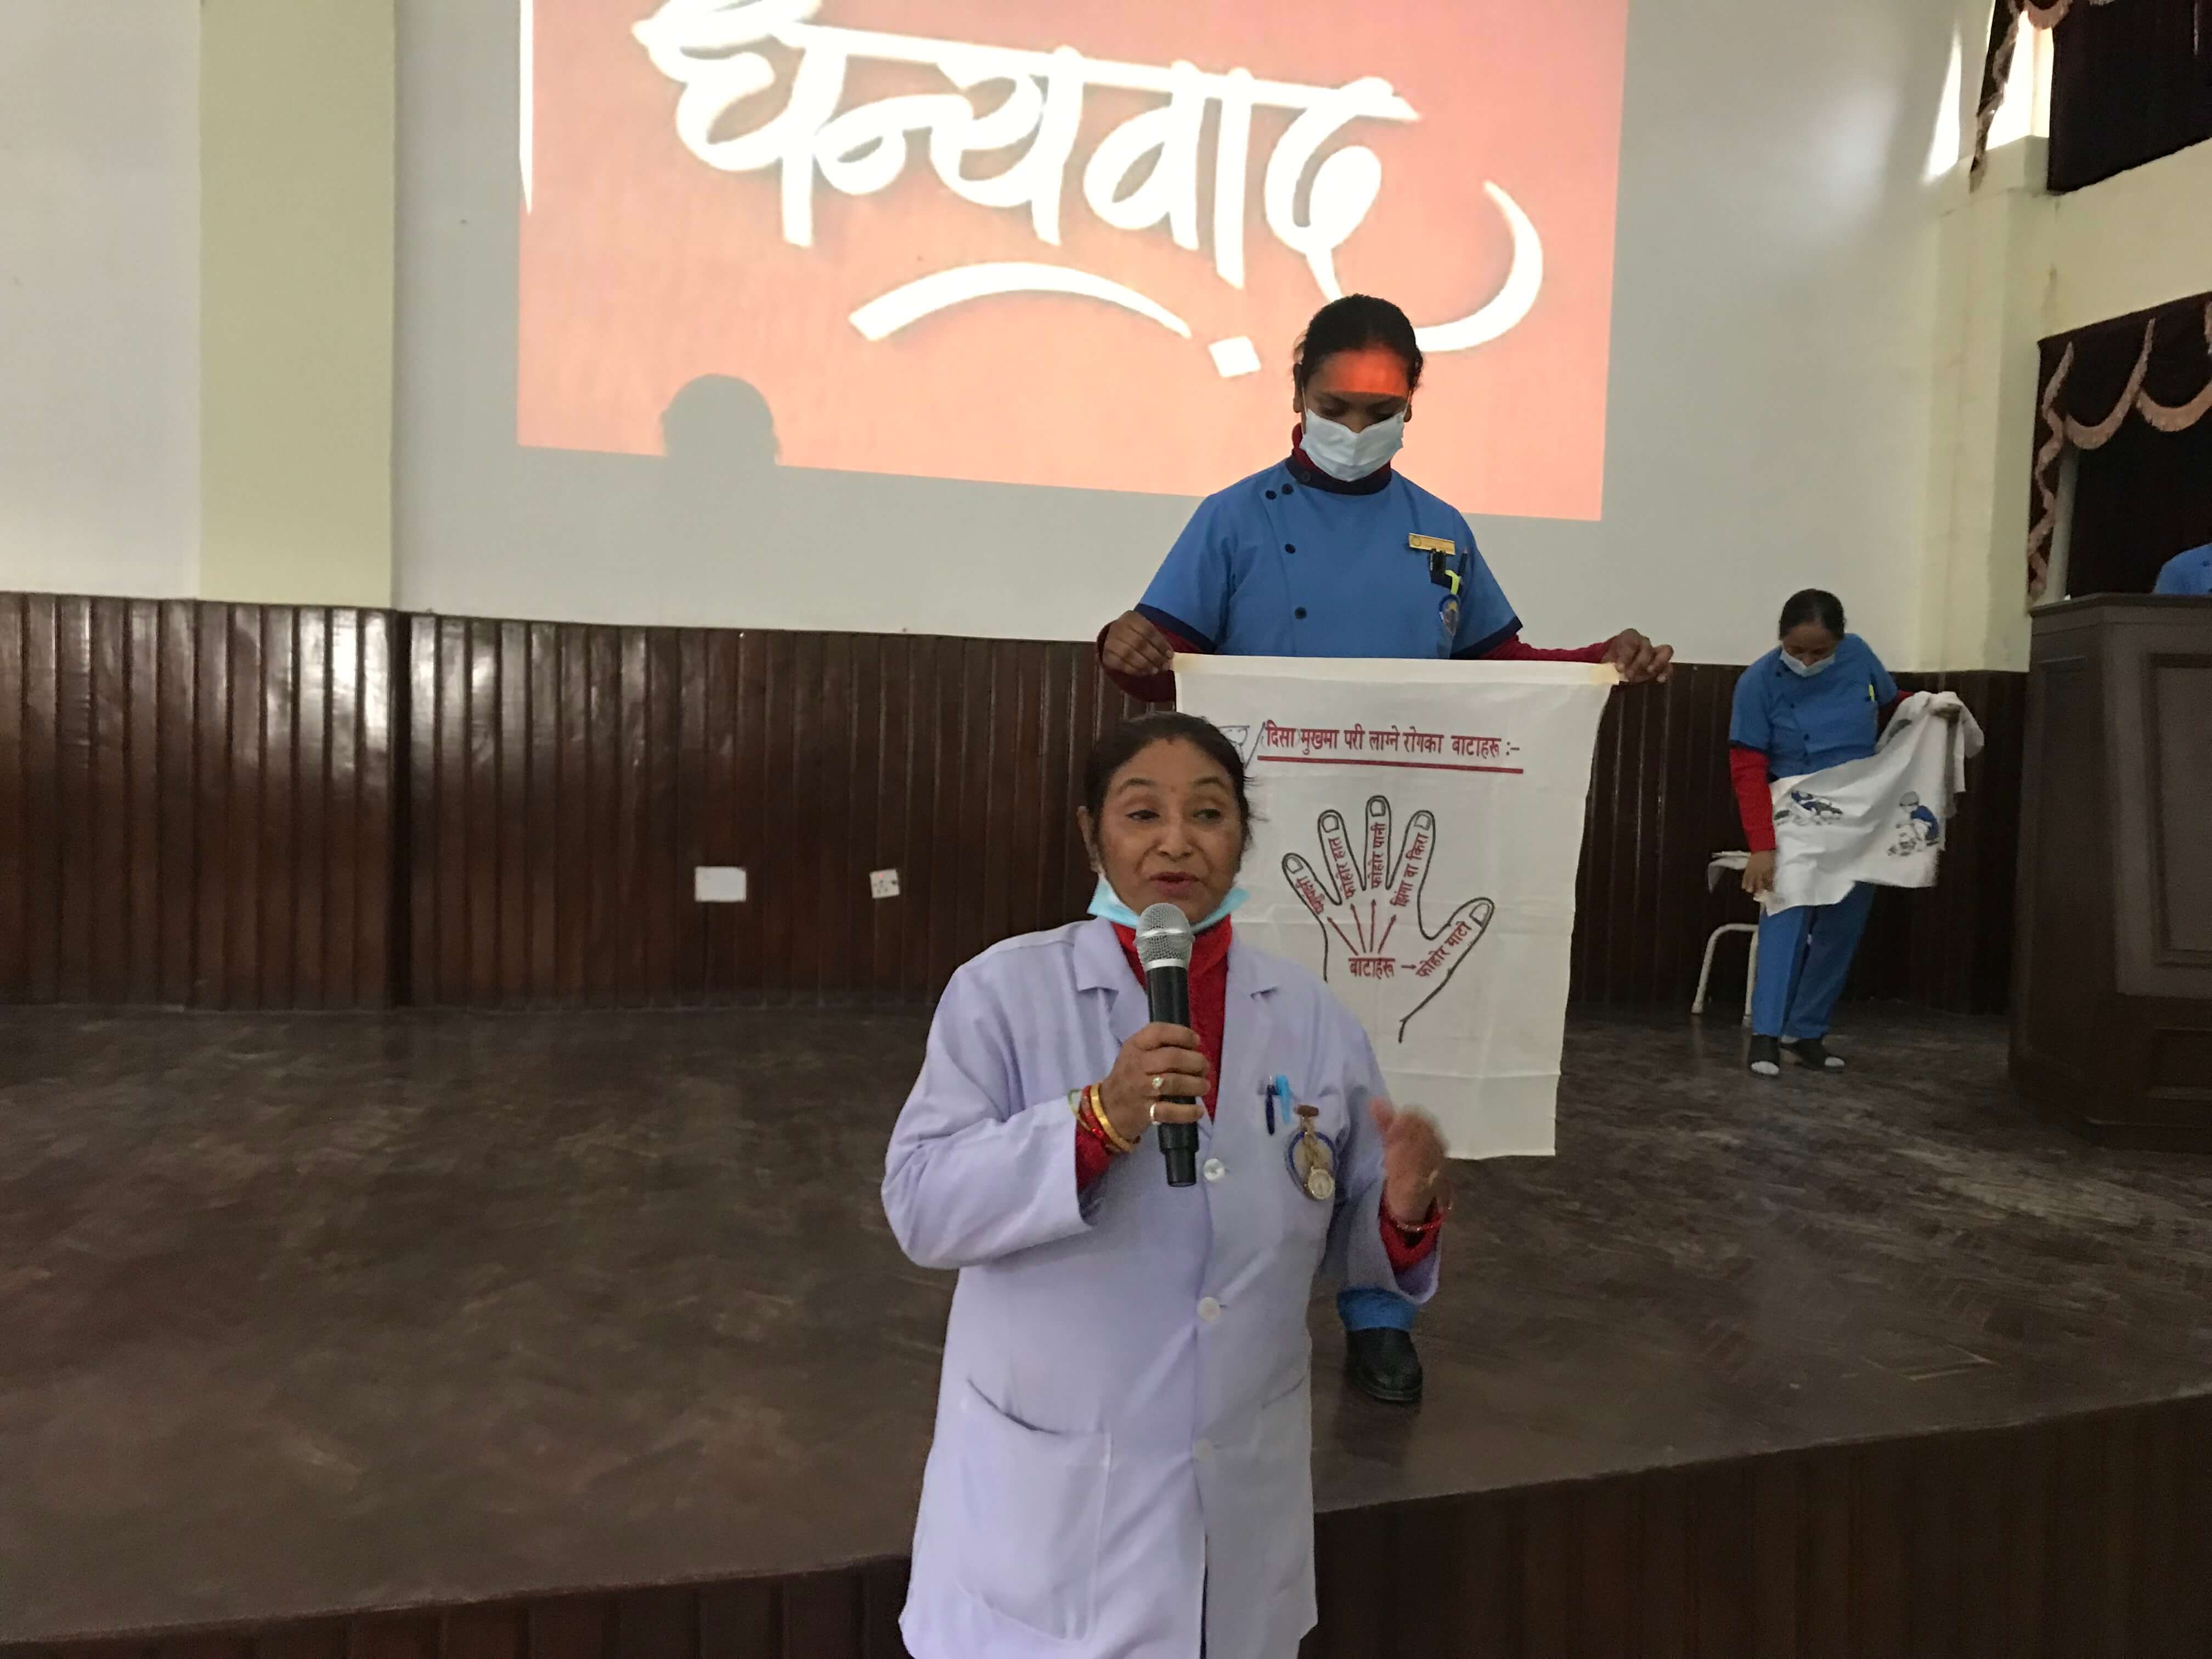 नेपाल मेडिकल कलेजका सरसफाईकर्मीहरुलाई संक्रमण रोकथाम, नियन्त्रण सम्बन्धी तालिम